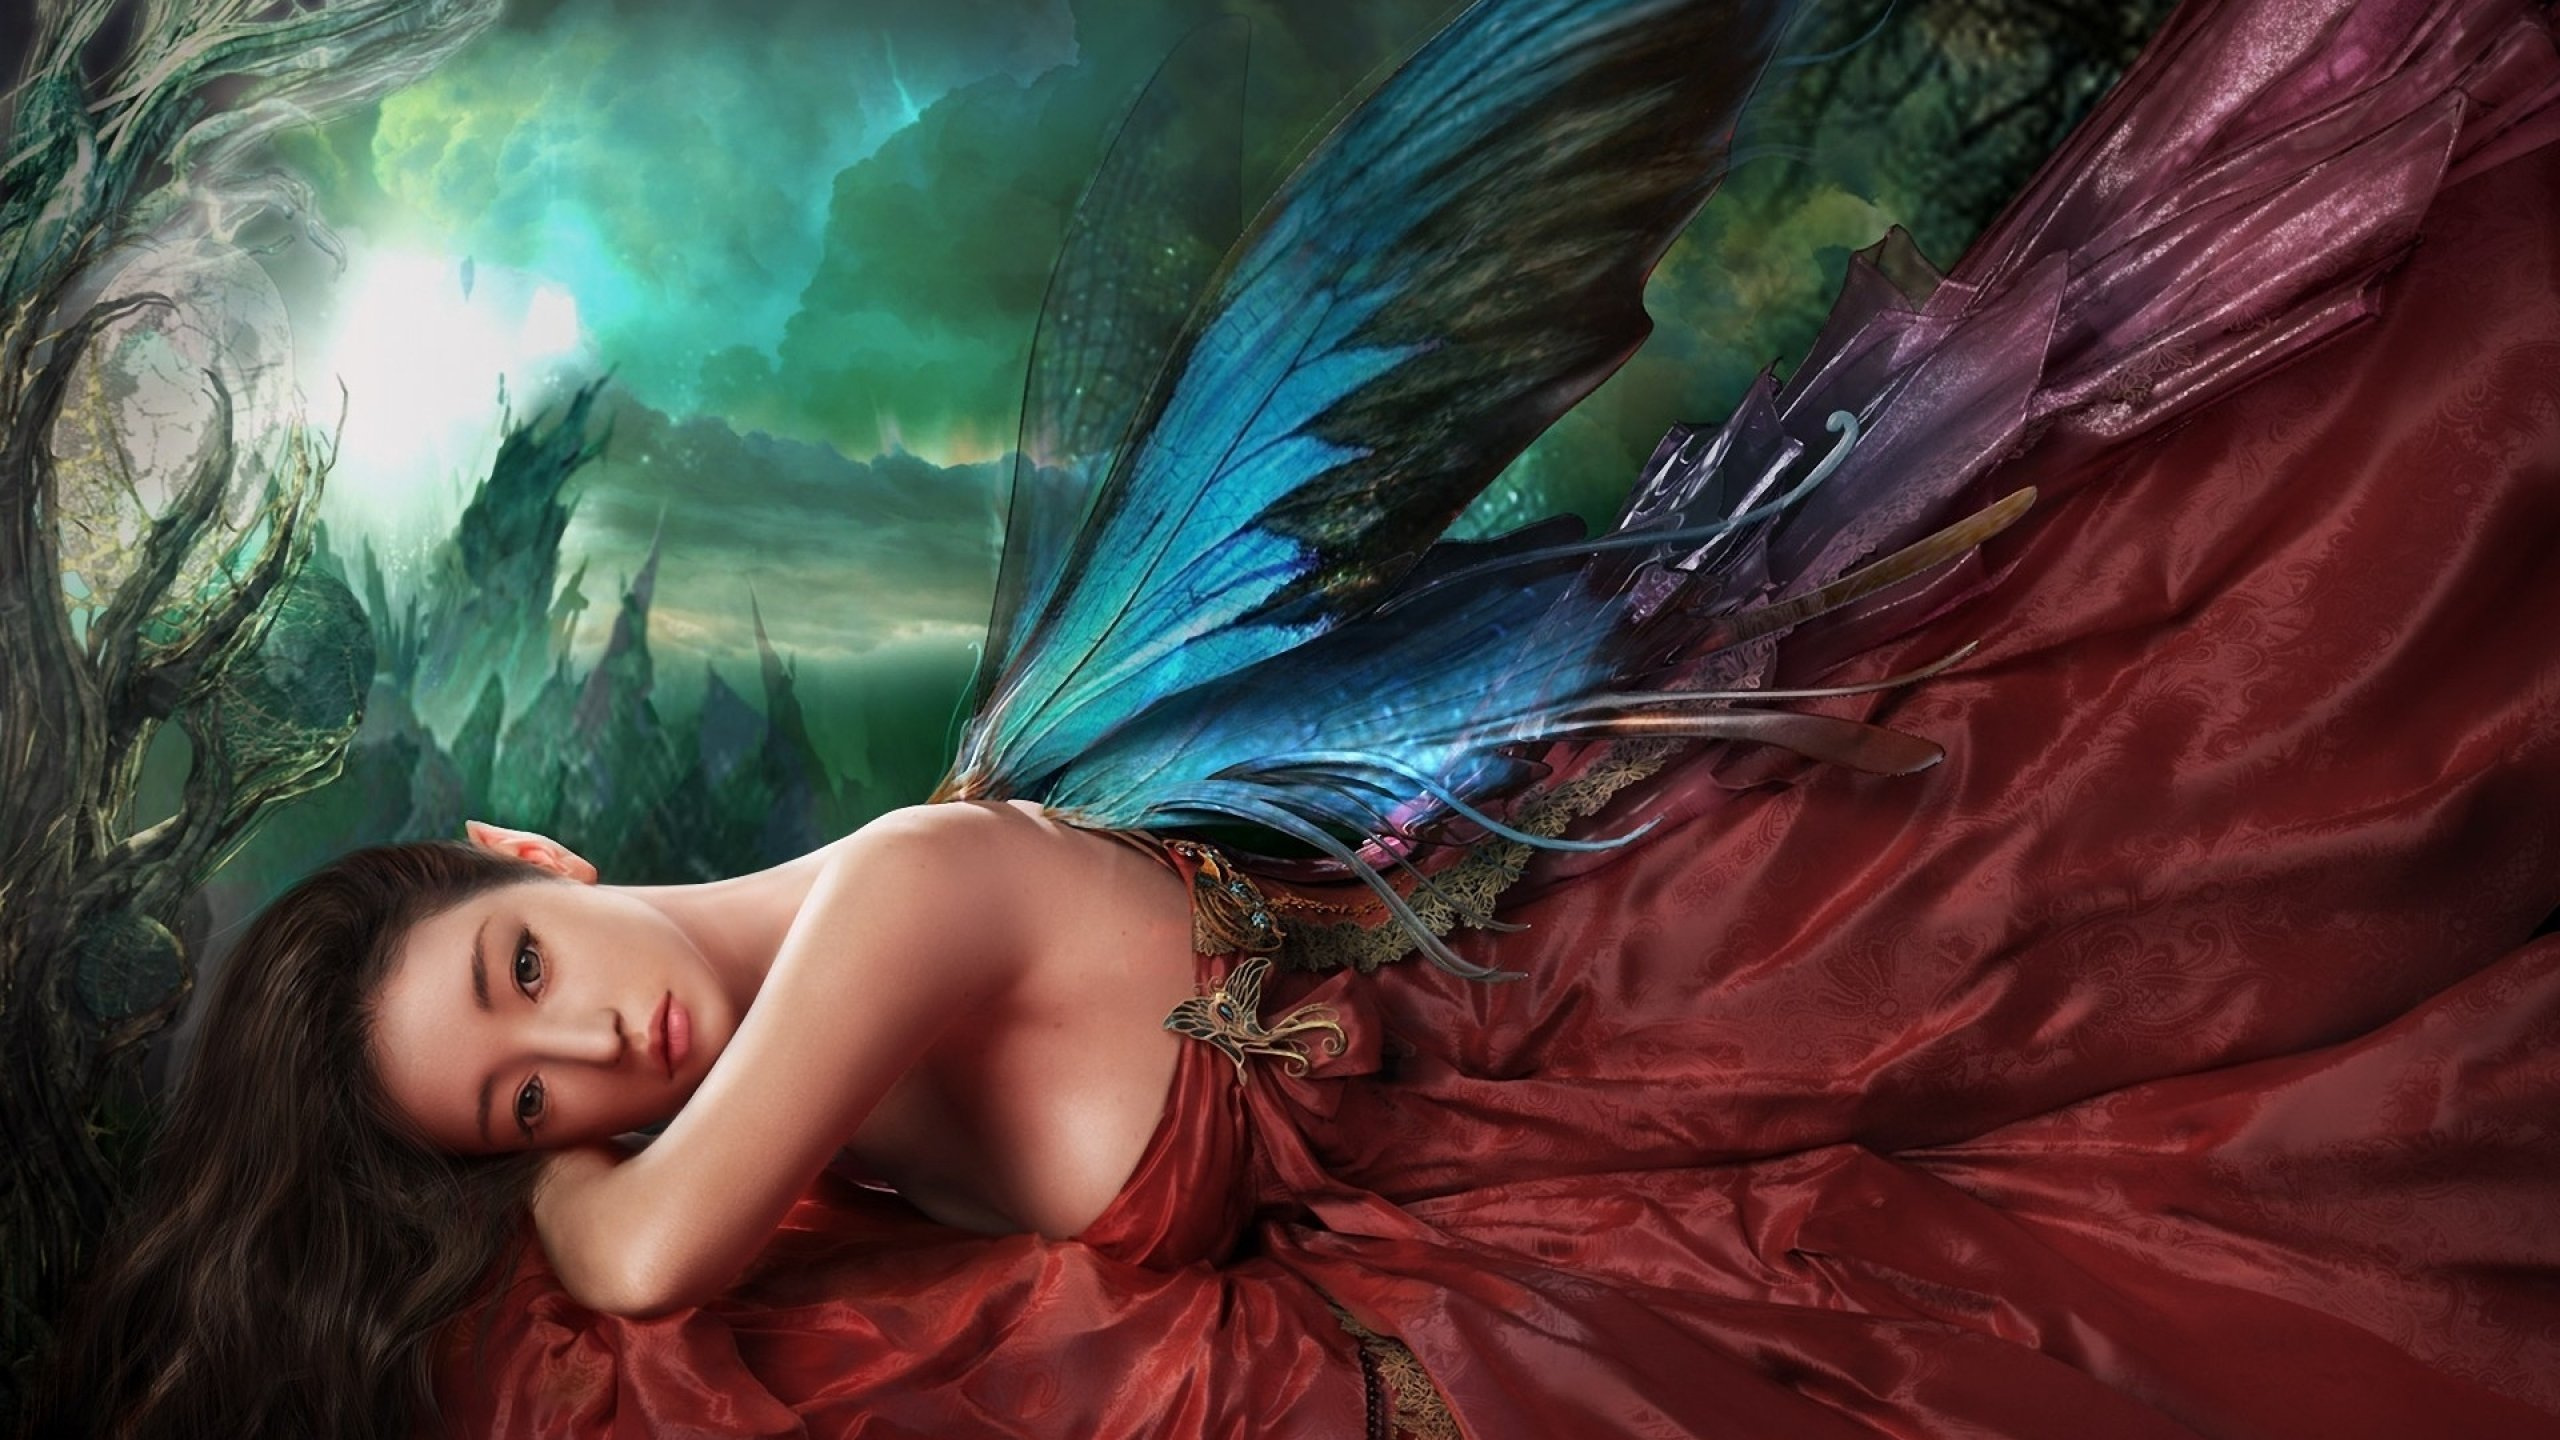 童话, 艺术, 羽毛, 翼, 神秘的生物 壁纸 2560x1440 允许